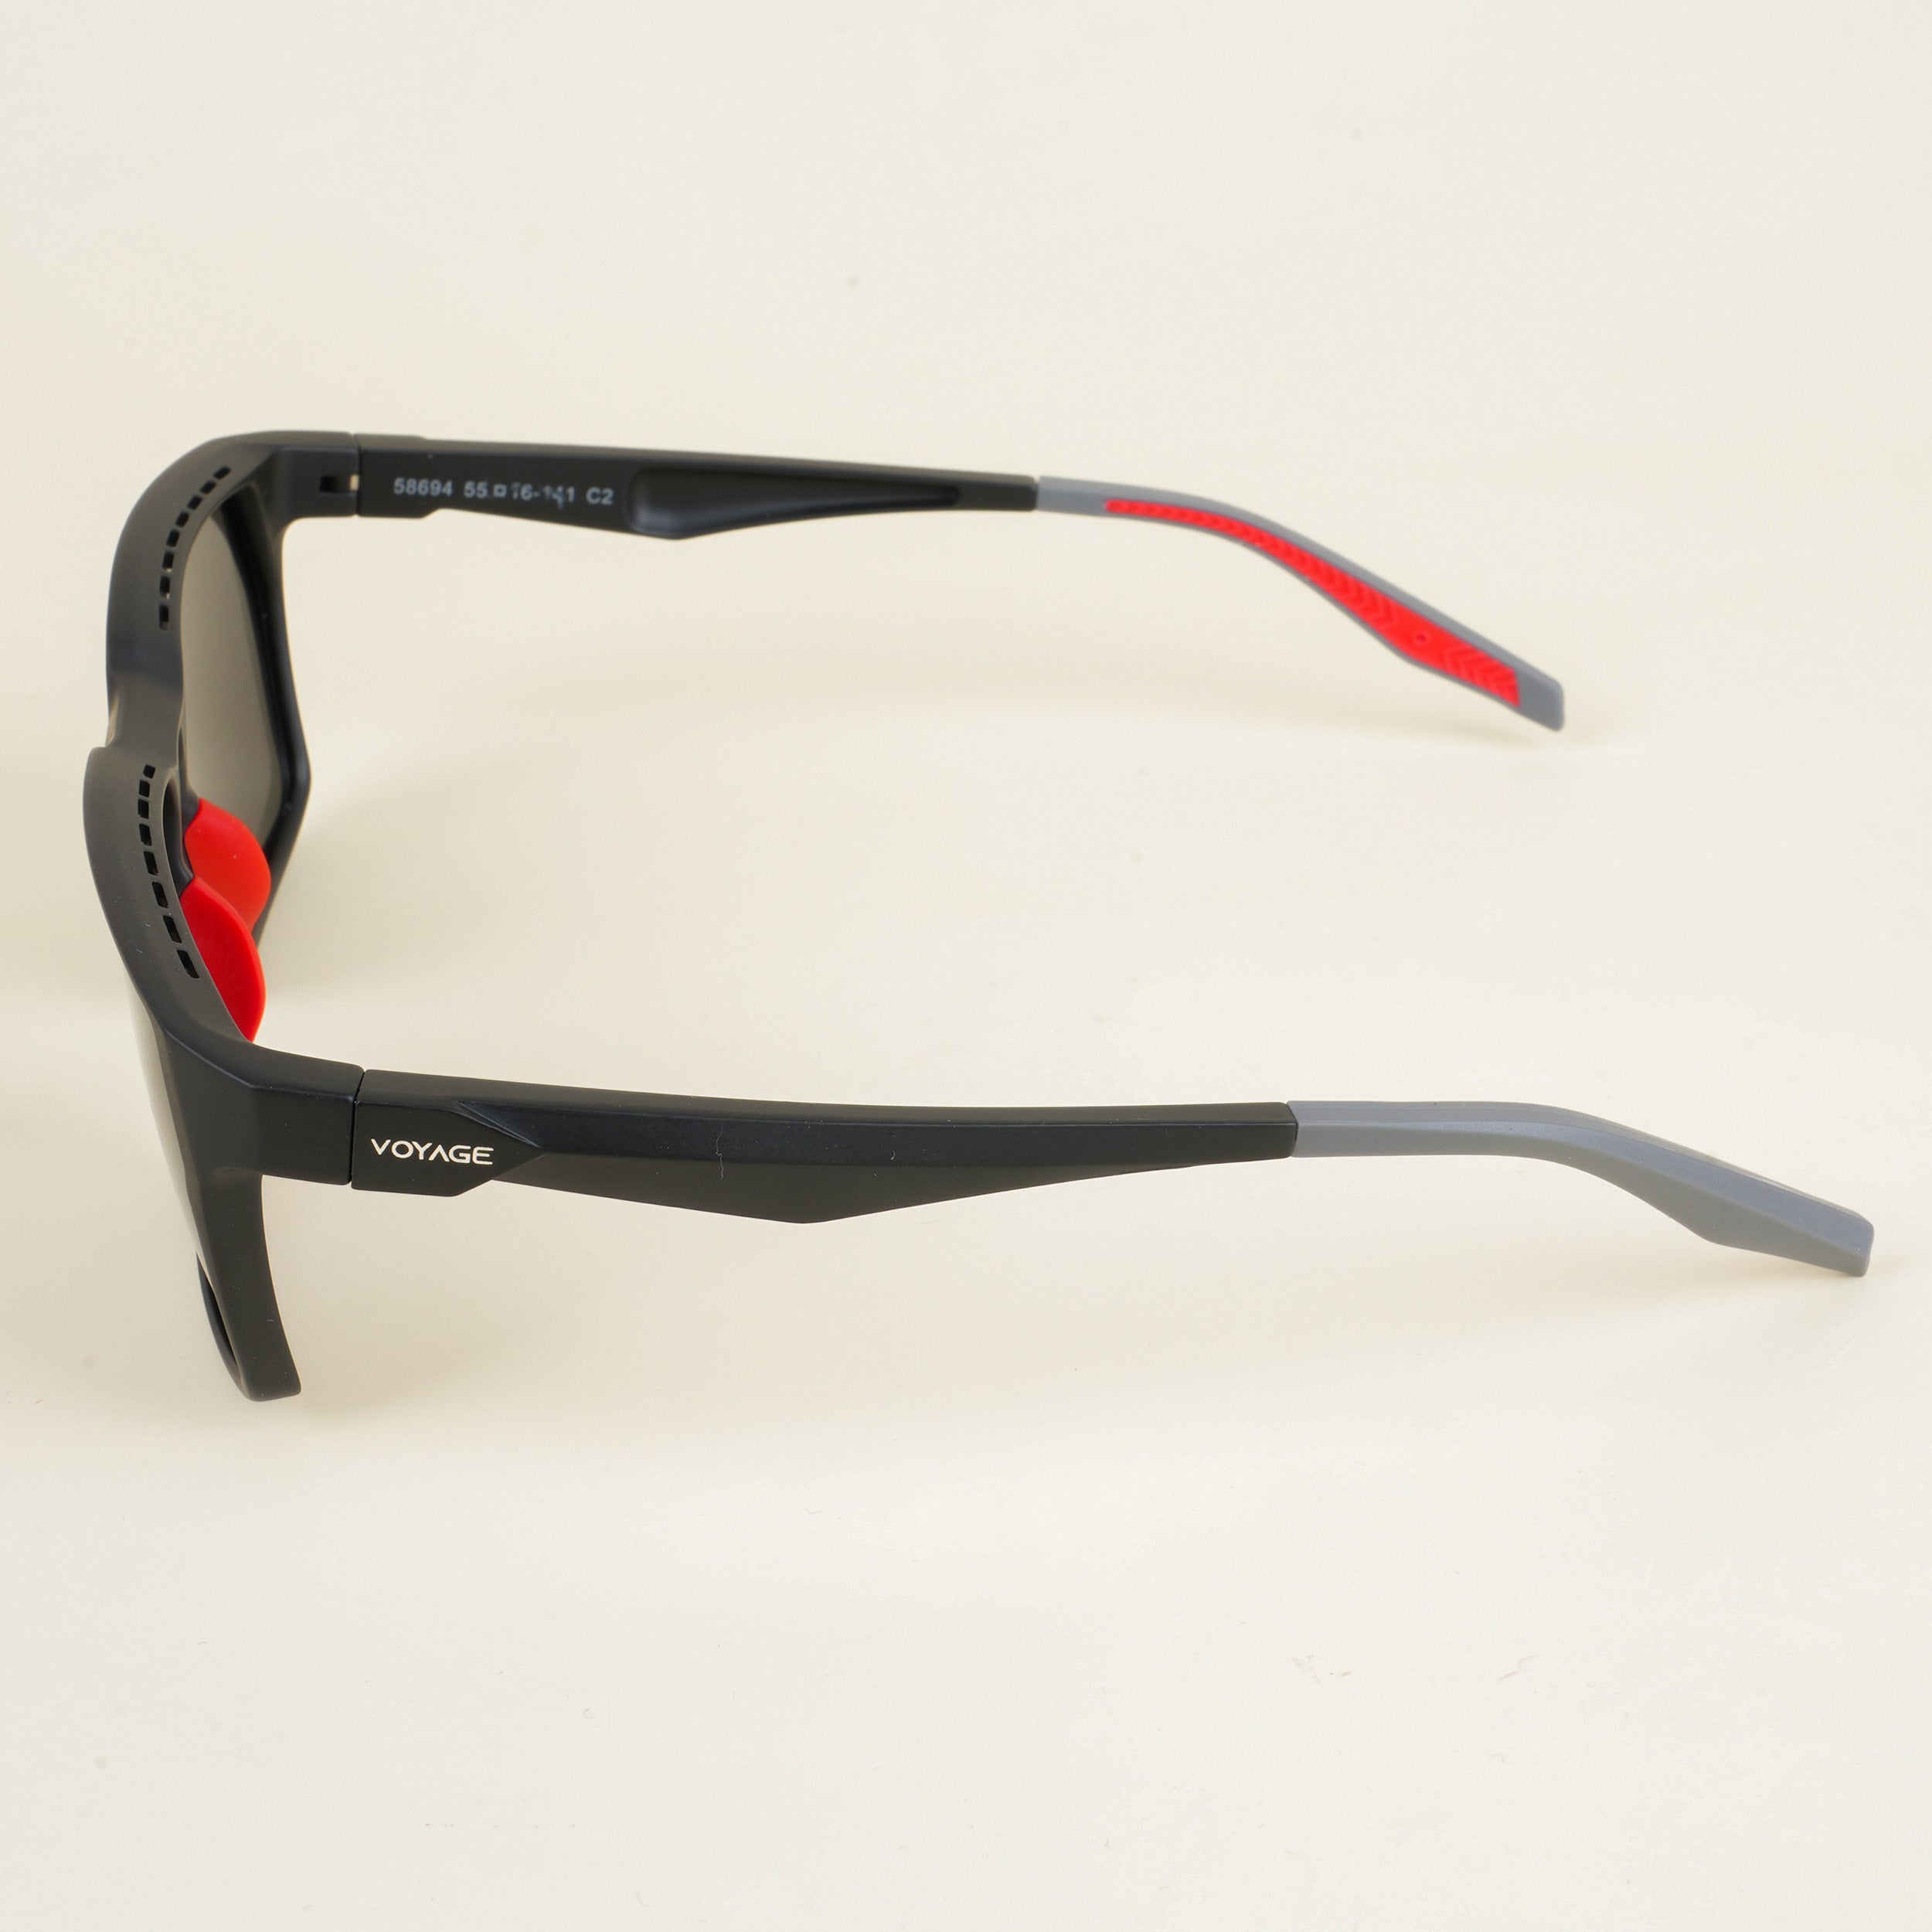 Voyage Wayfarer Polarized Sunglasses for Men & Women (Black Lens | Matt Black & Red Frame - PMG5284)